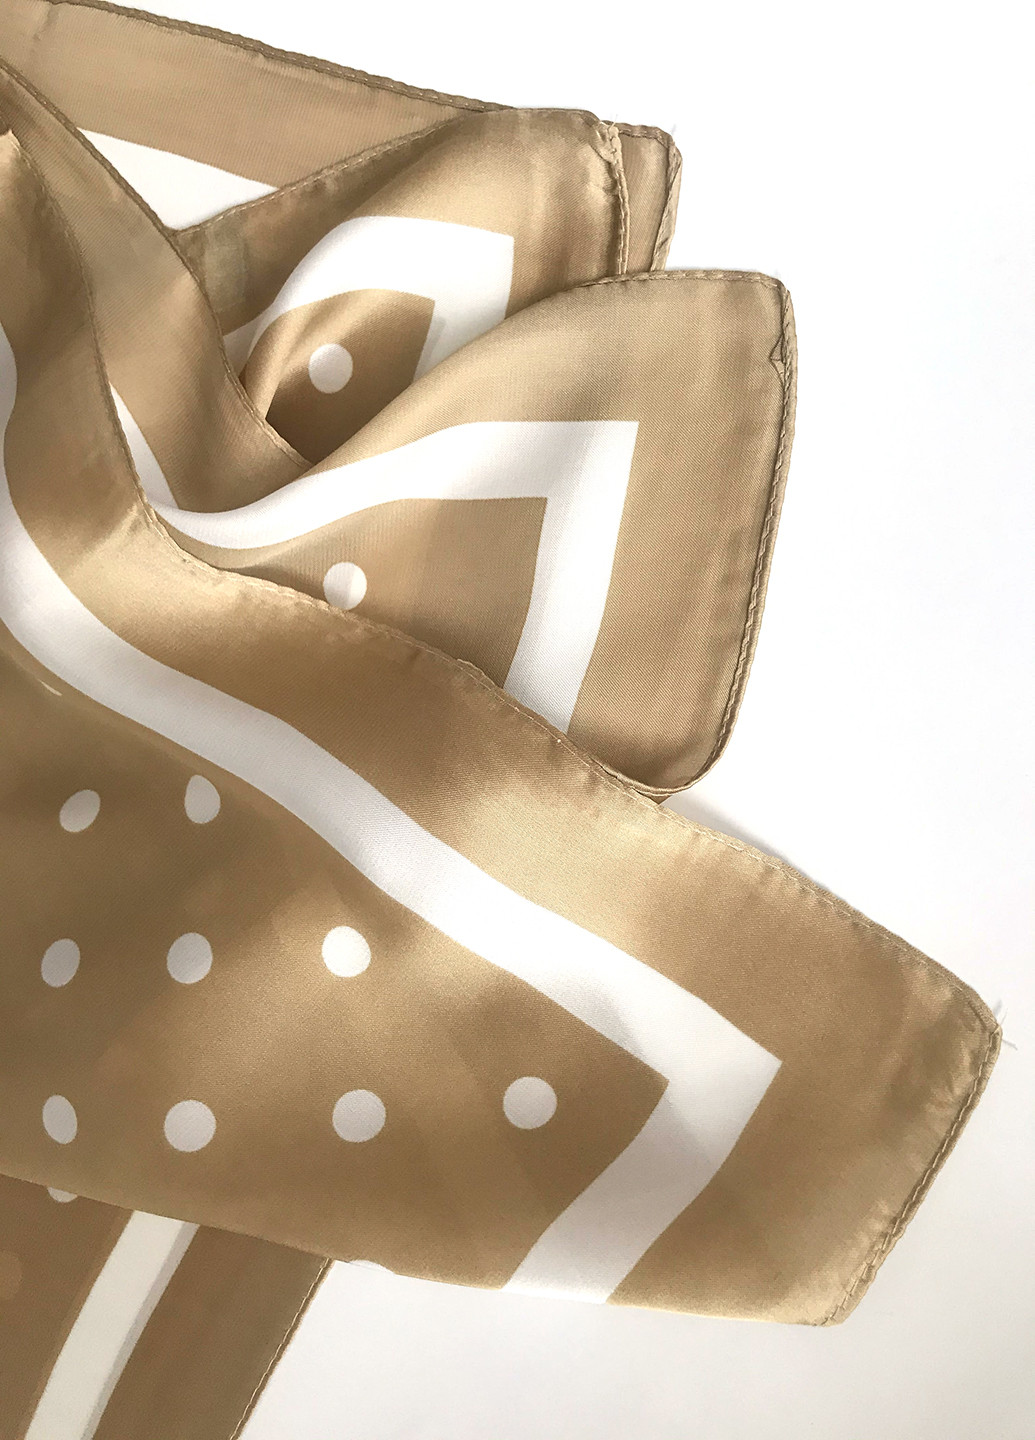 Стильный изящный платок,70*70см Mulberry полоска золотой пляжный атлас